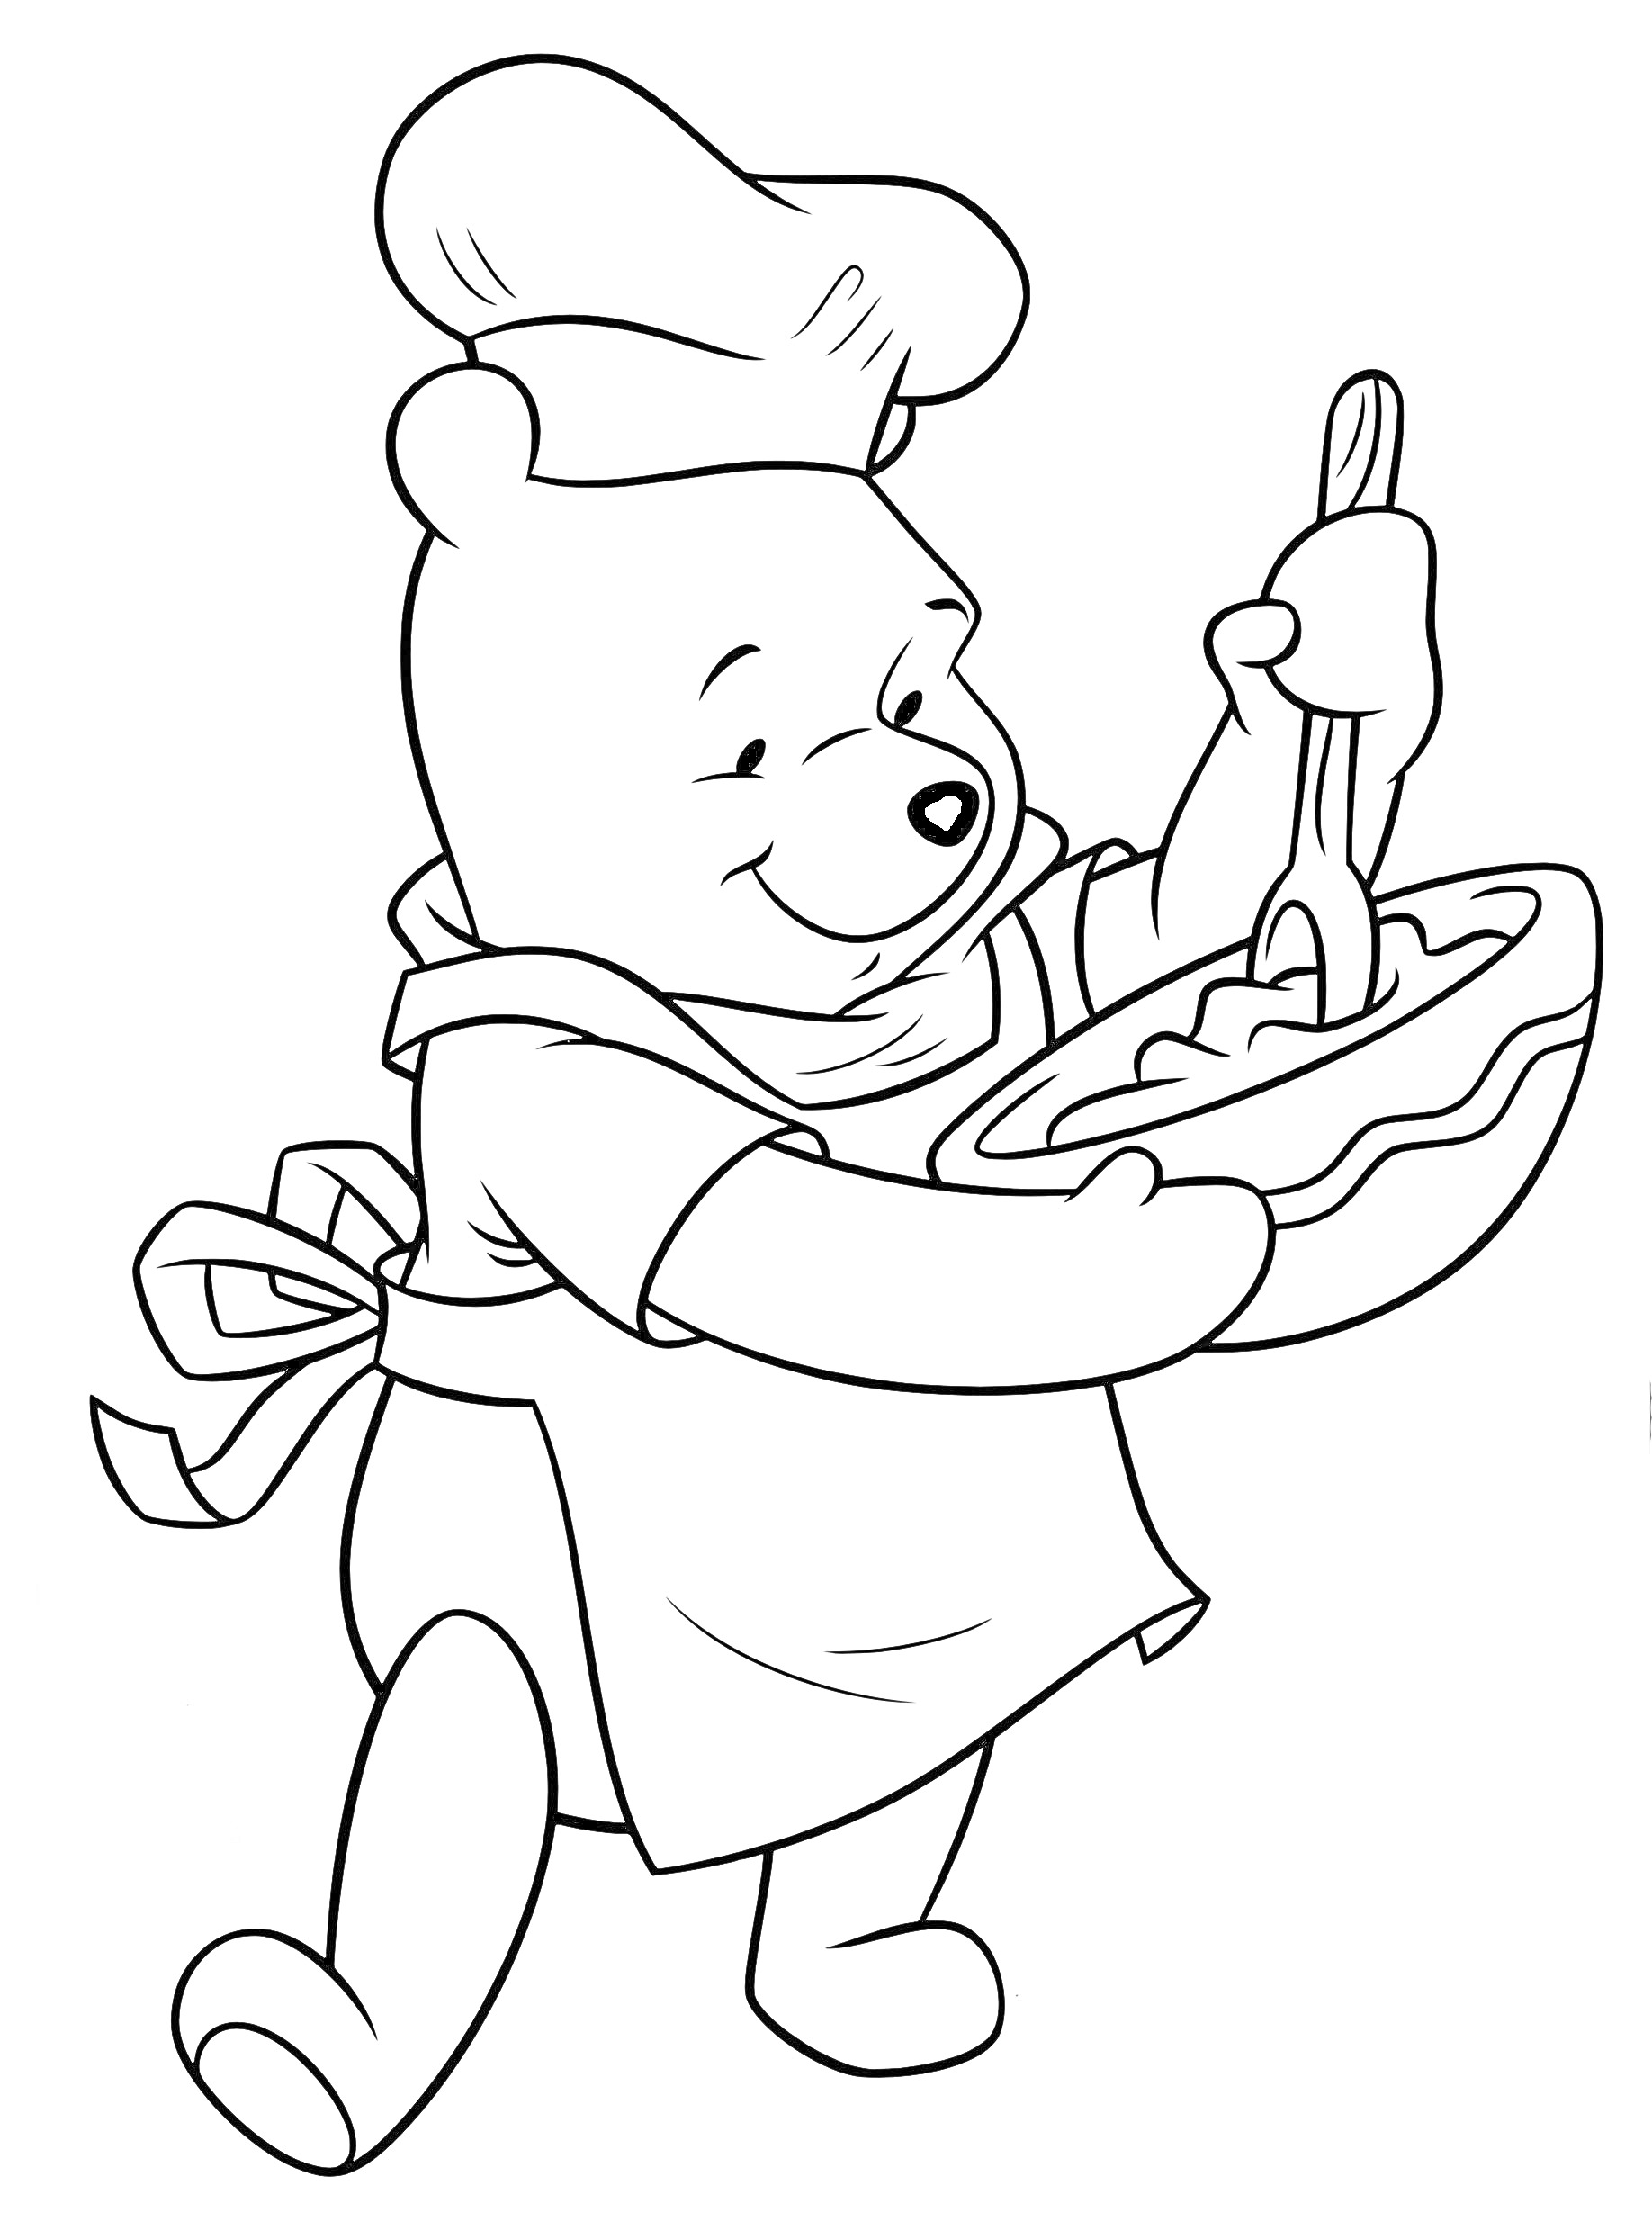 Раскраска Медвежонок-повар в фартуке и колпаке, мешающий тесто в миске